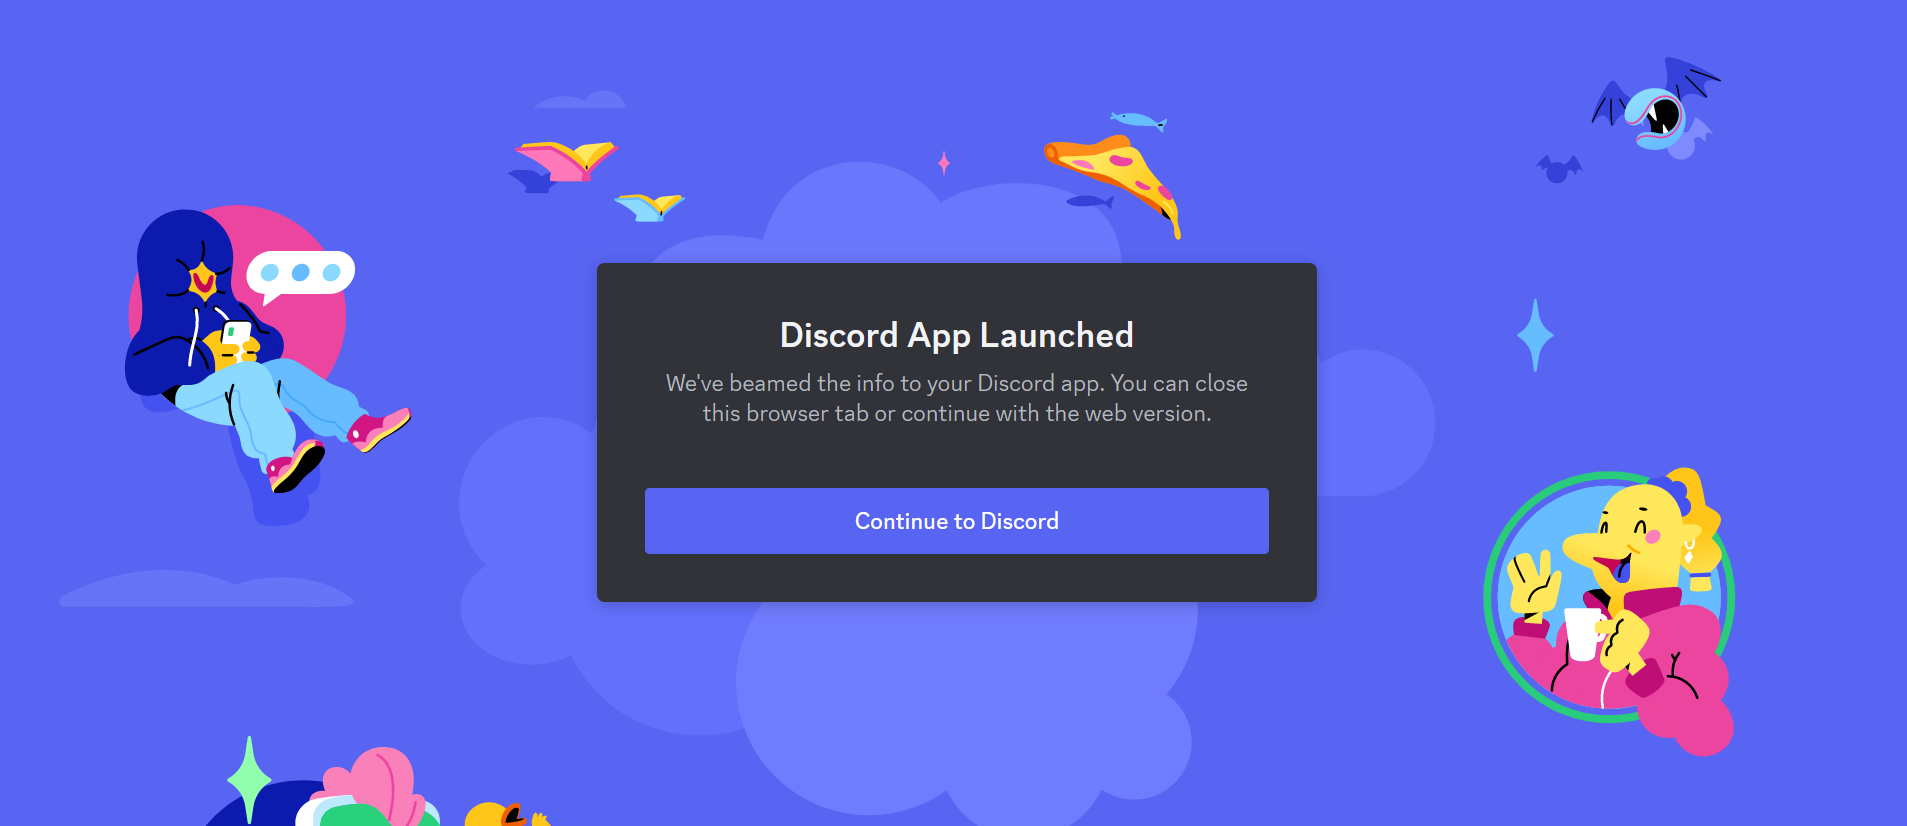 Discord server invite page